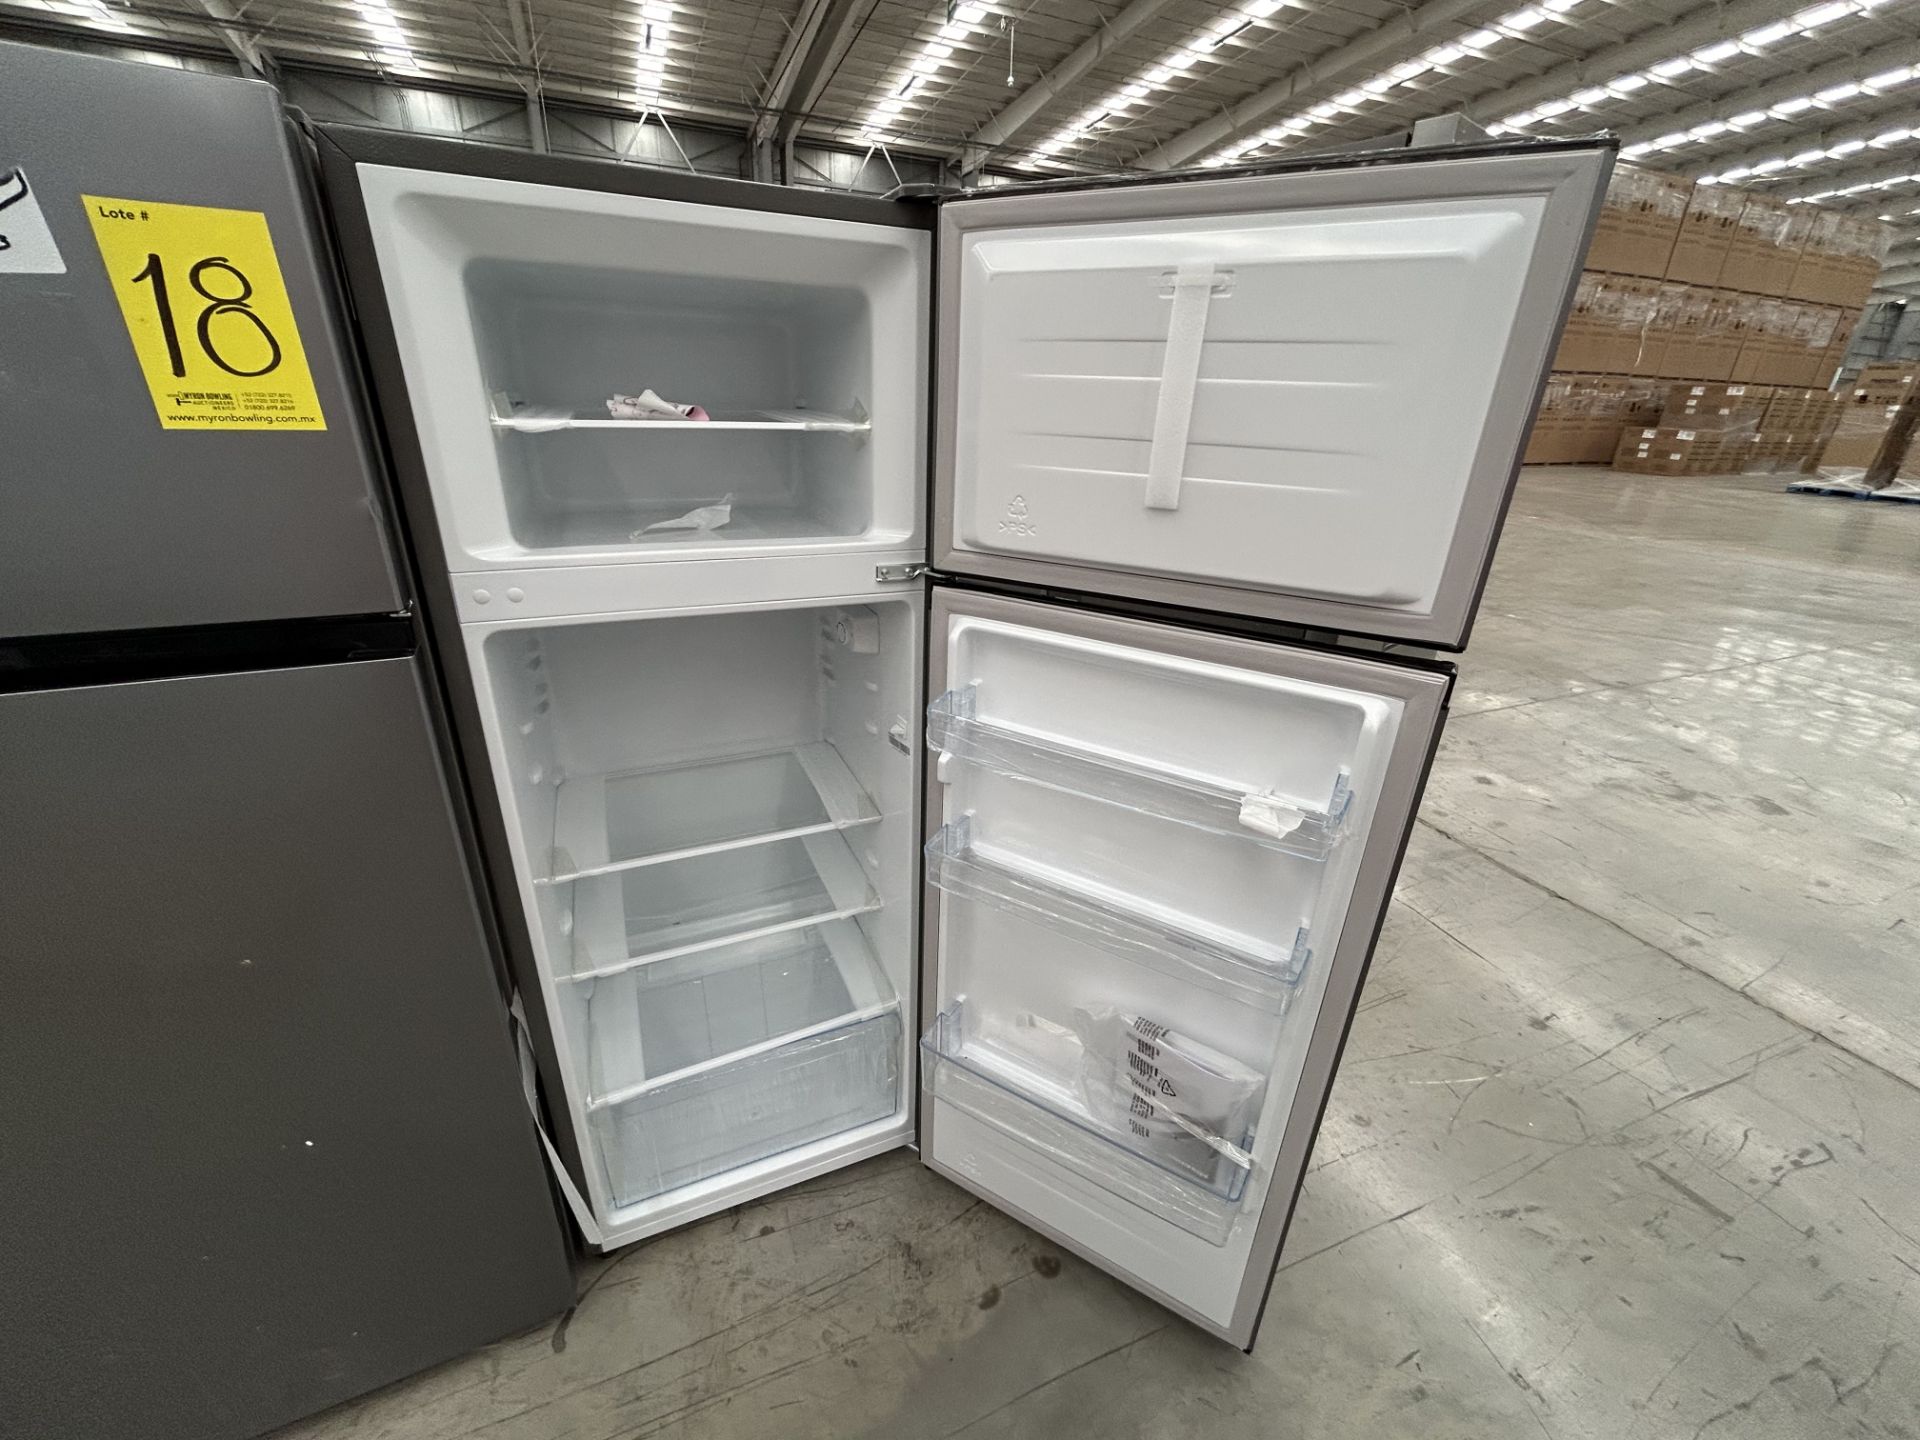 Lote de 2 Refrigeradores contiene: 1 Refrigerador Marca HISENSE, Modelo RT80D6AGX, Serie 20358, Col - Image 4 of 6